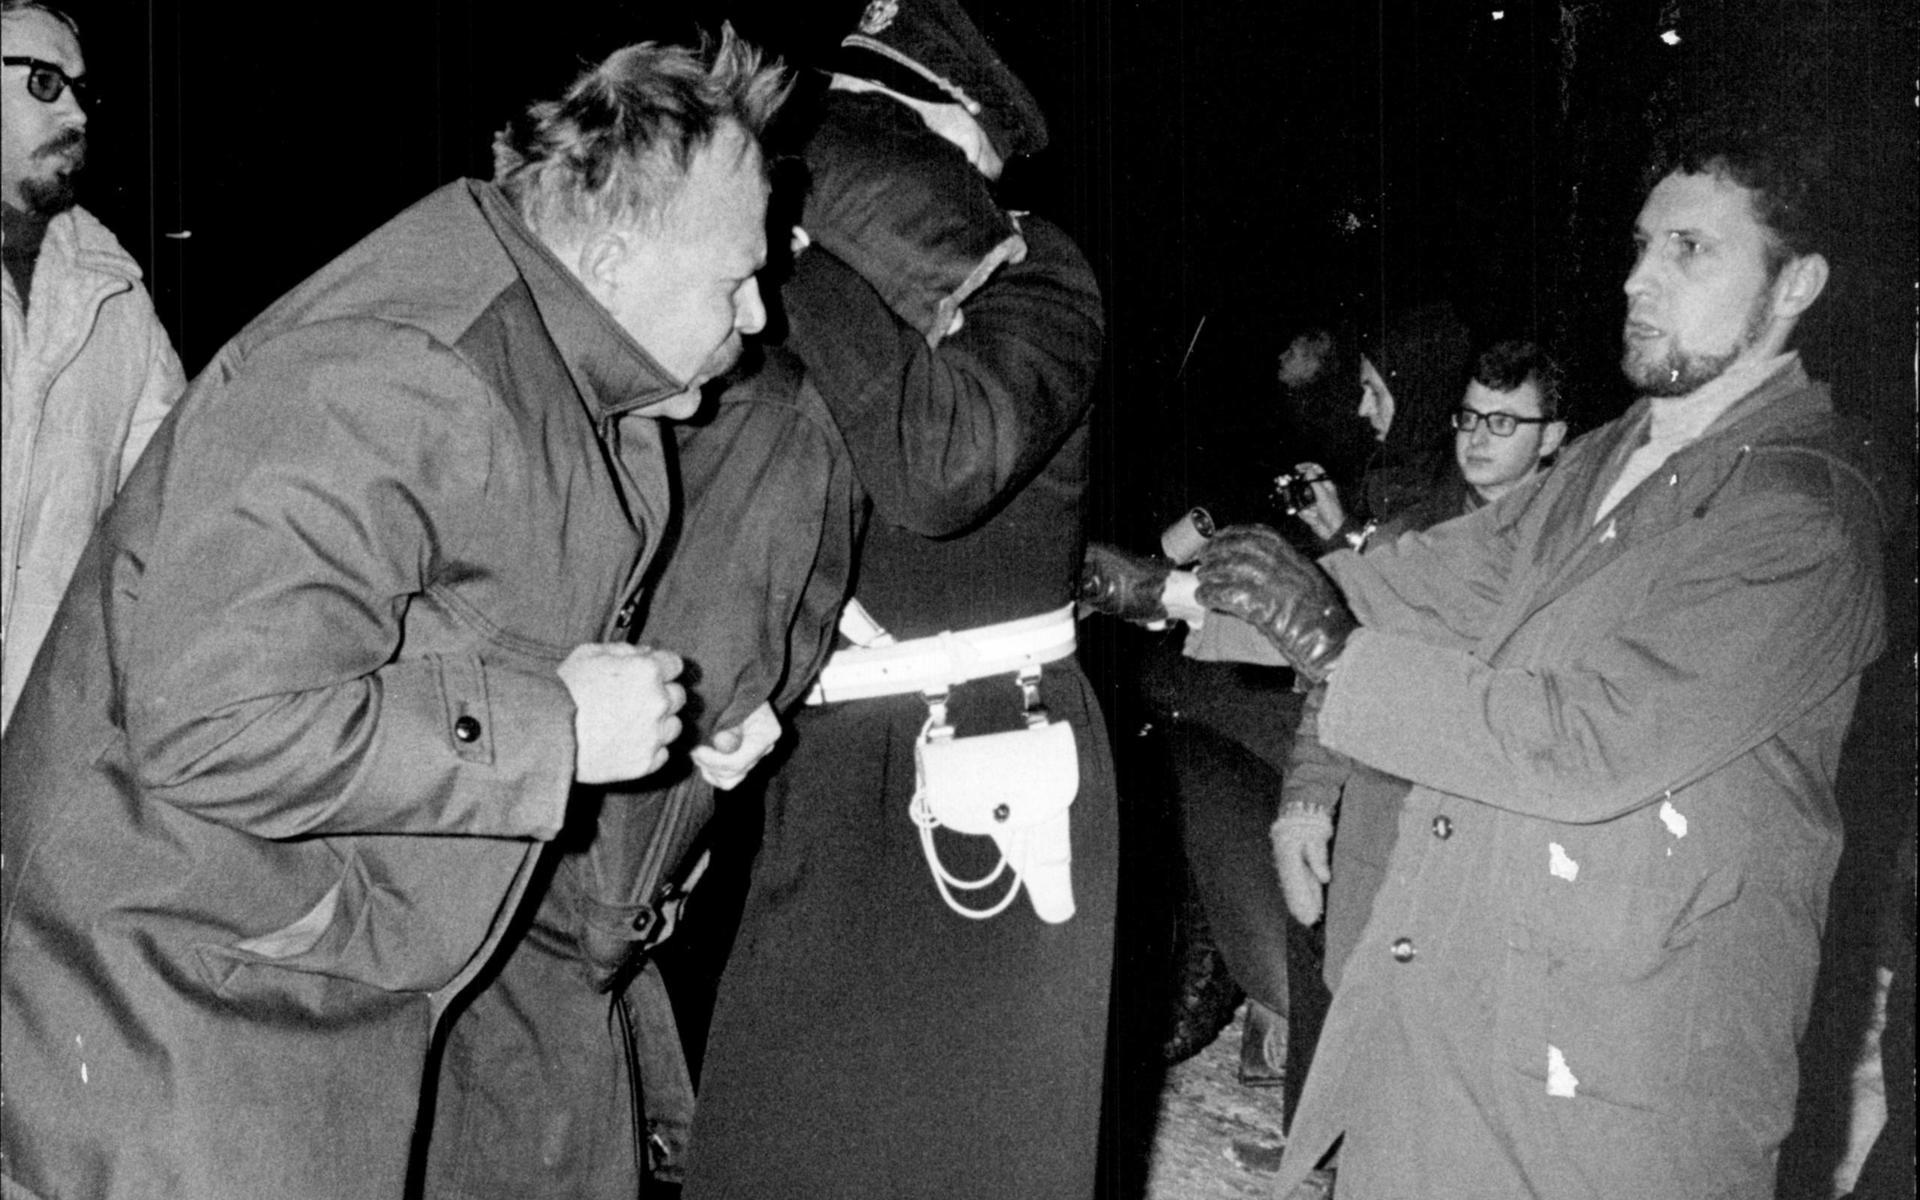 Samma år hamnade Myrdal i bråk med polisen under en demonstration mot Vietnamnkriget.